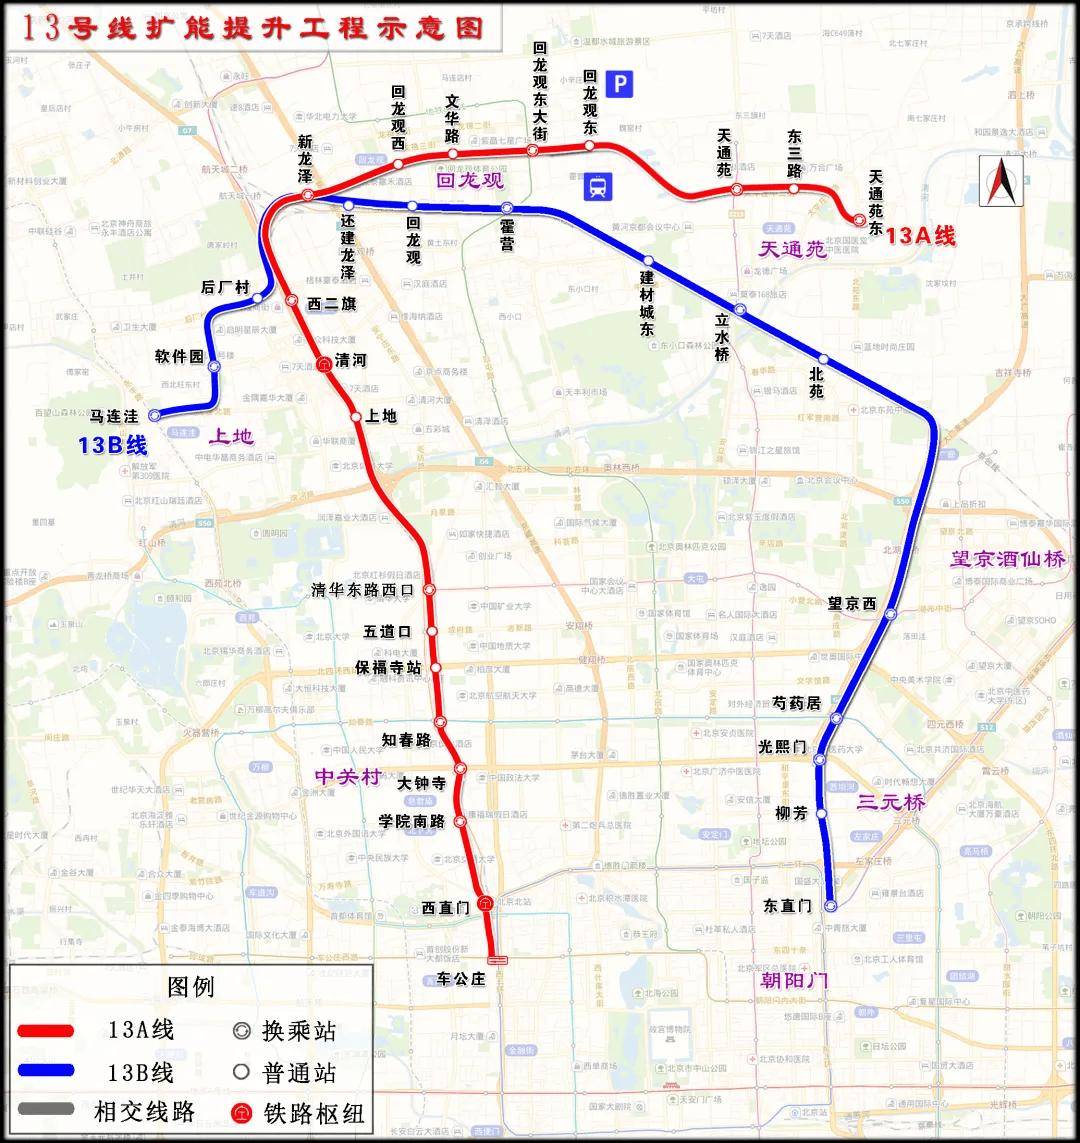 北京地铁13号线扩能提升改造后,线路拆分成13a,13b两条线路,将新建